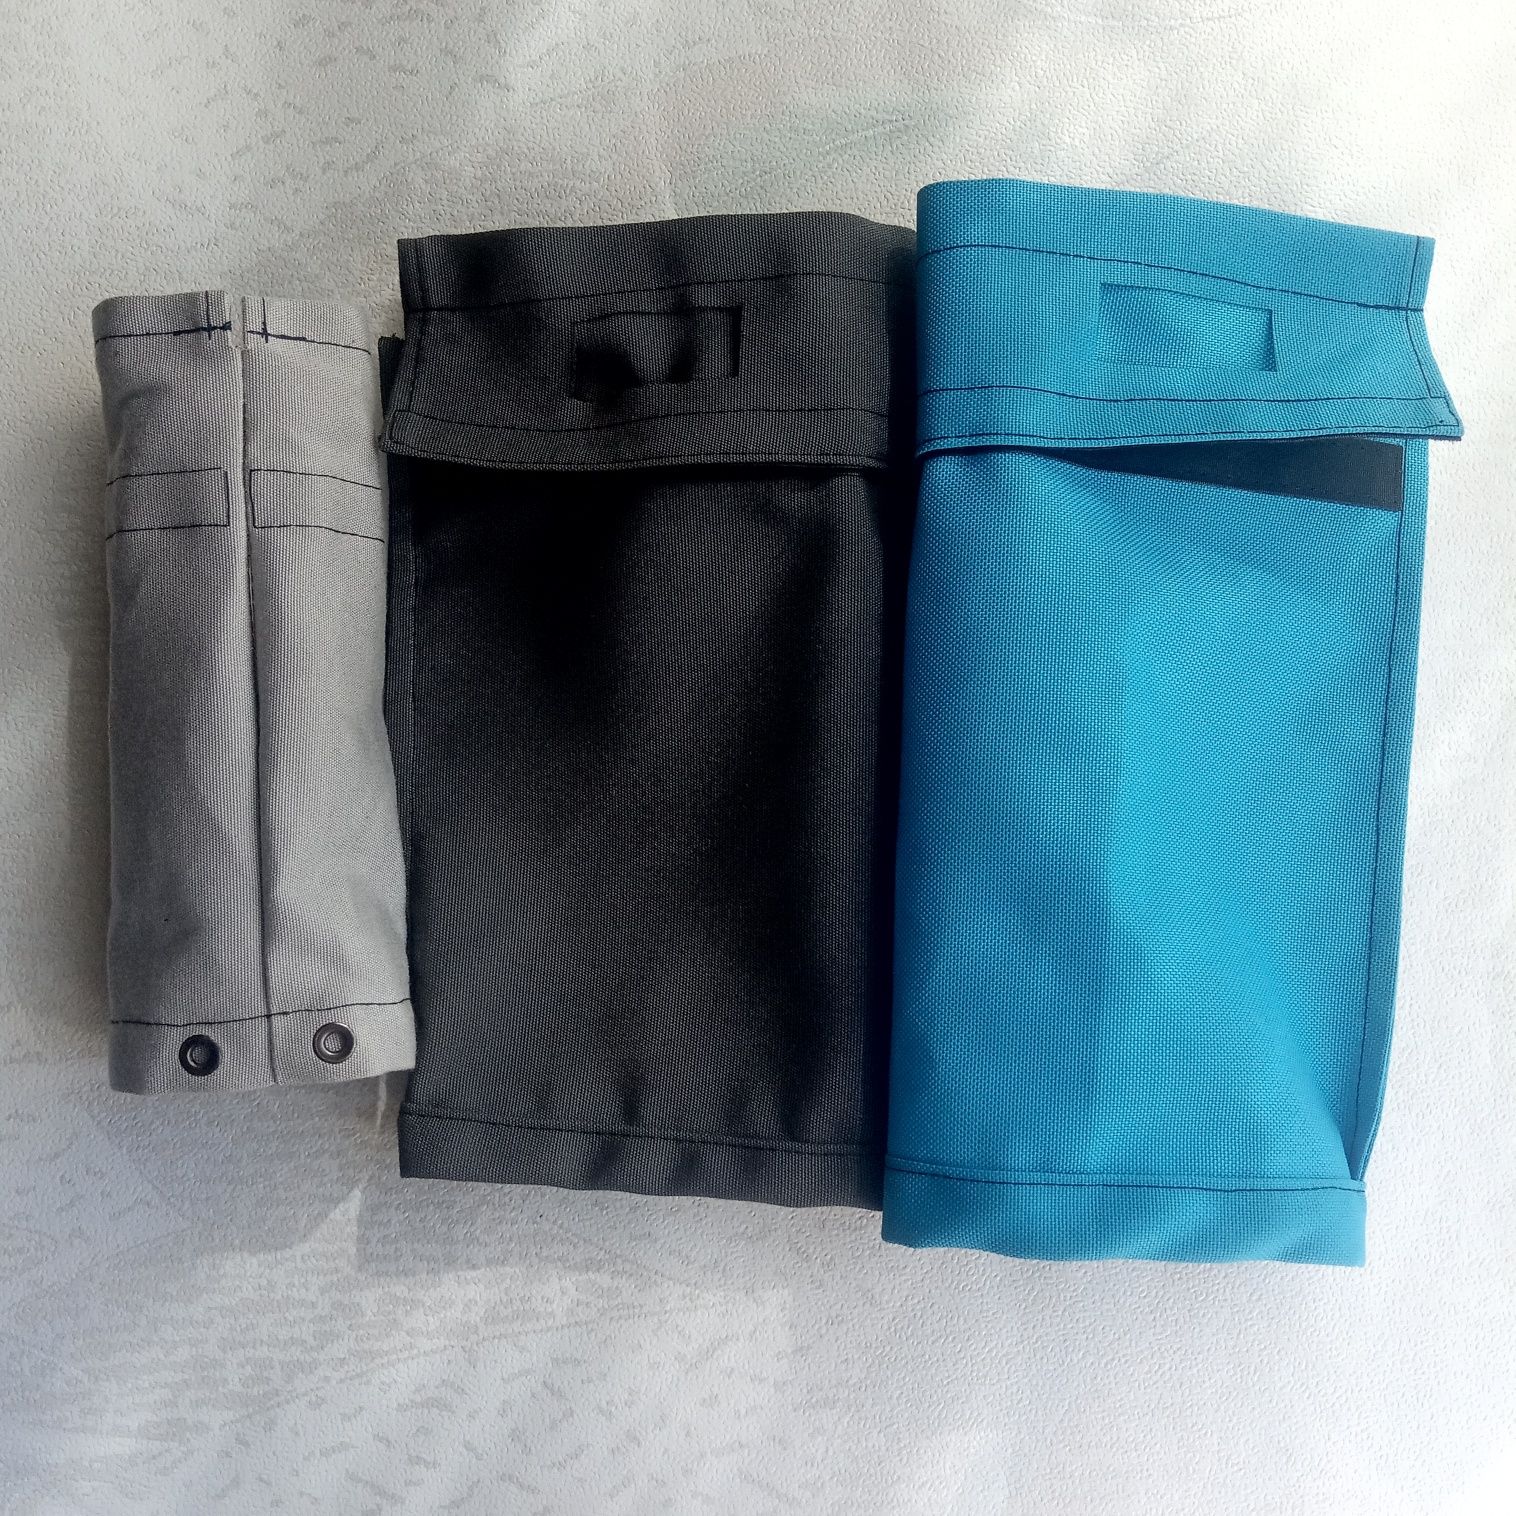 Чехлы, сумки, переноски нестандартных размеров (пошив, ремонт)